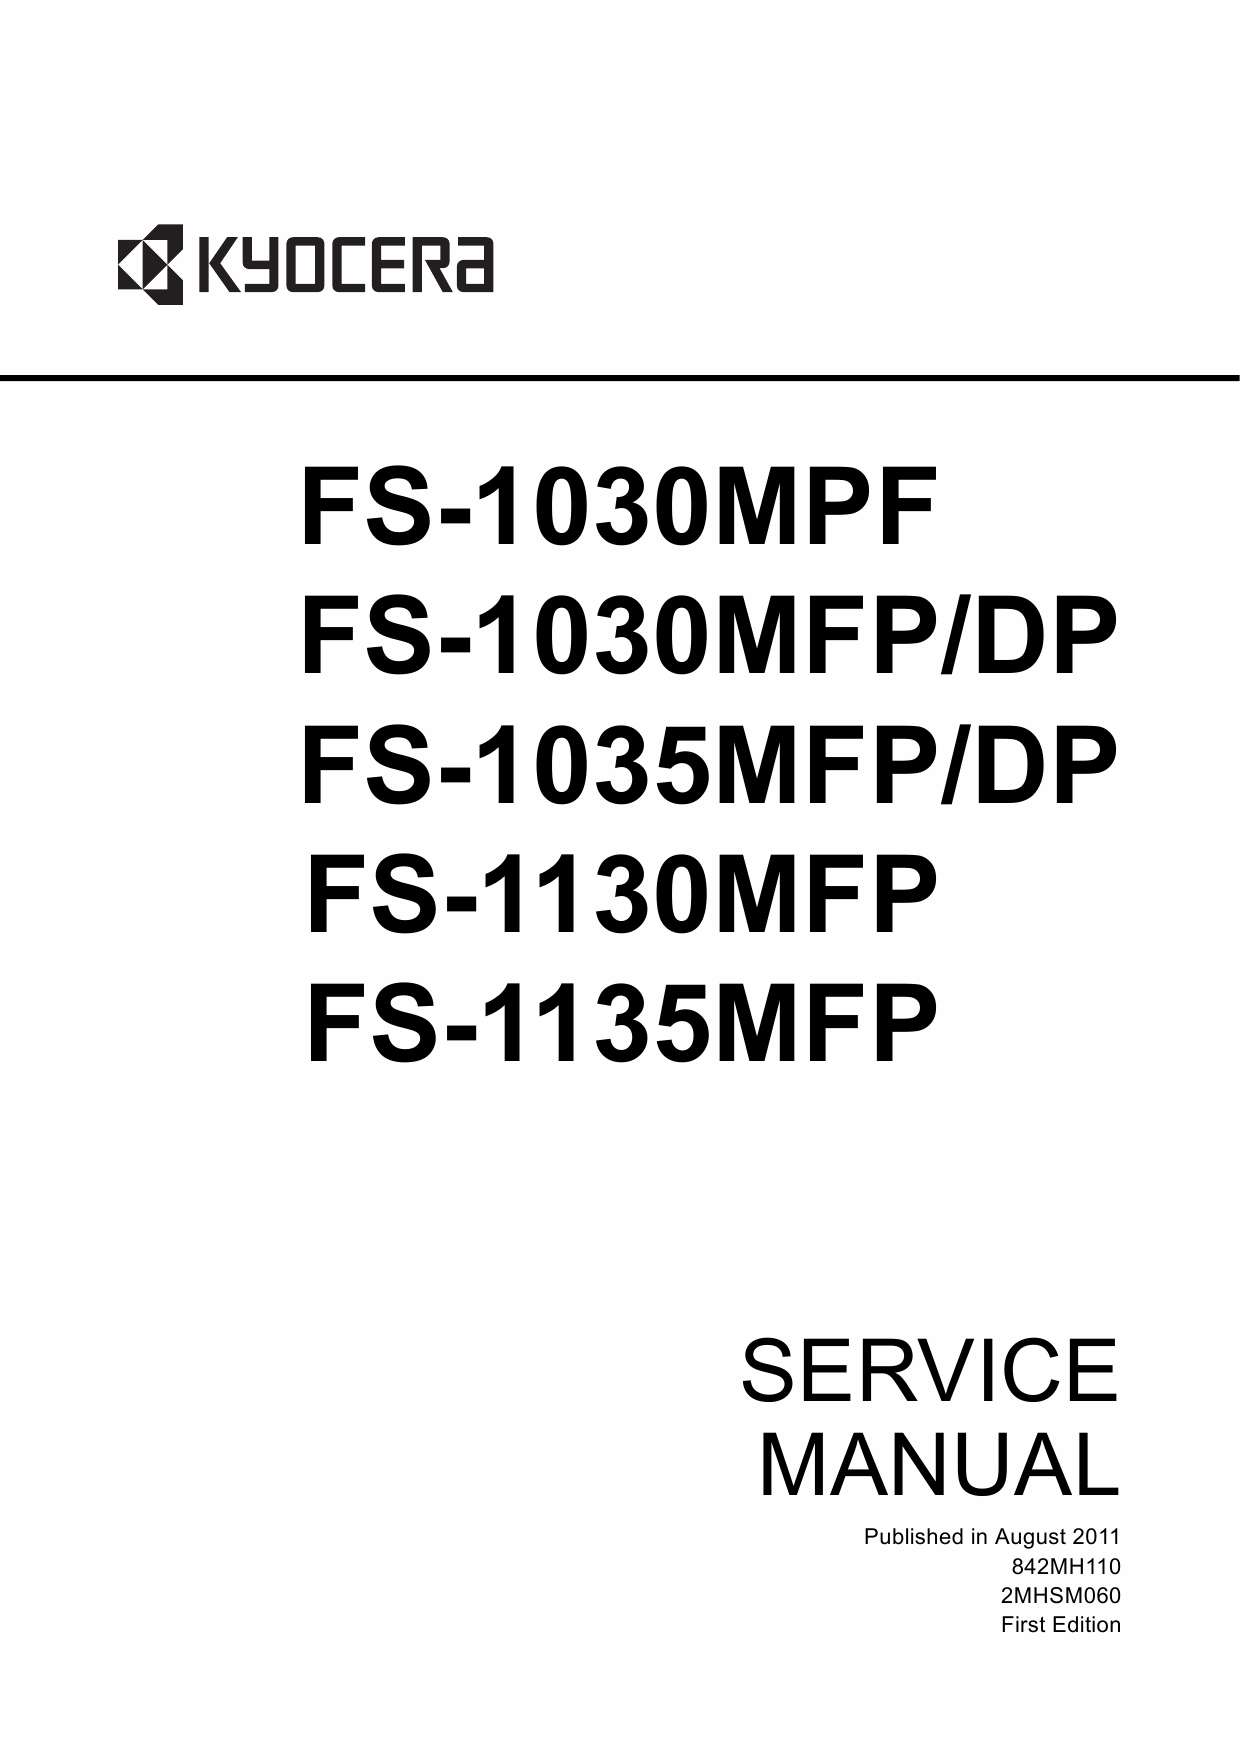 KYOCERA MFP FS-1030MFP 1035MFP 1130MFP 1135MFP Service Manual-1